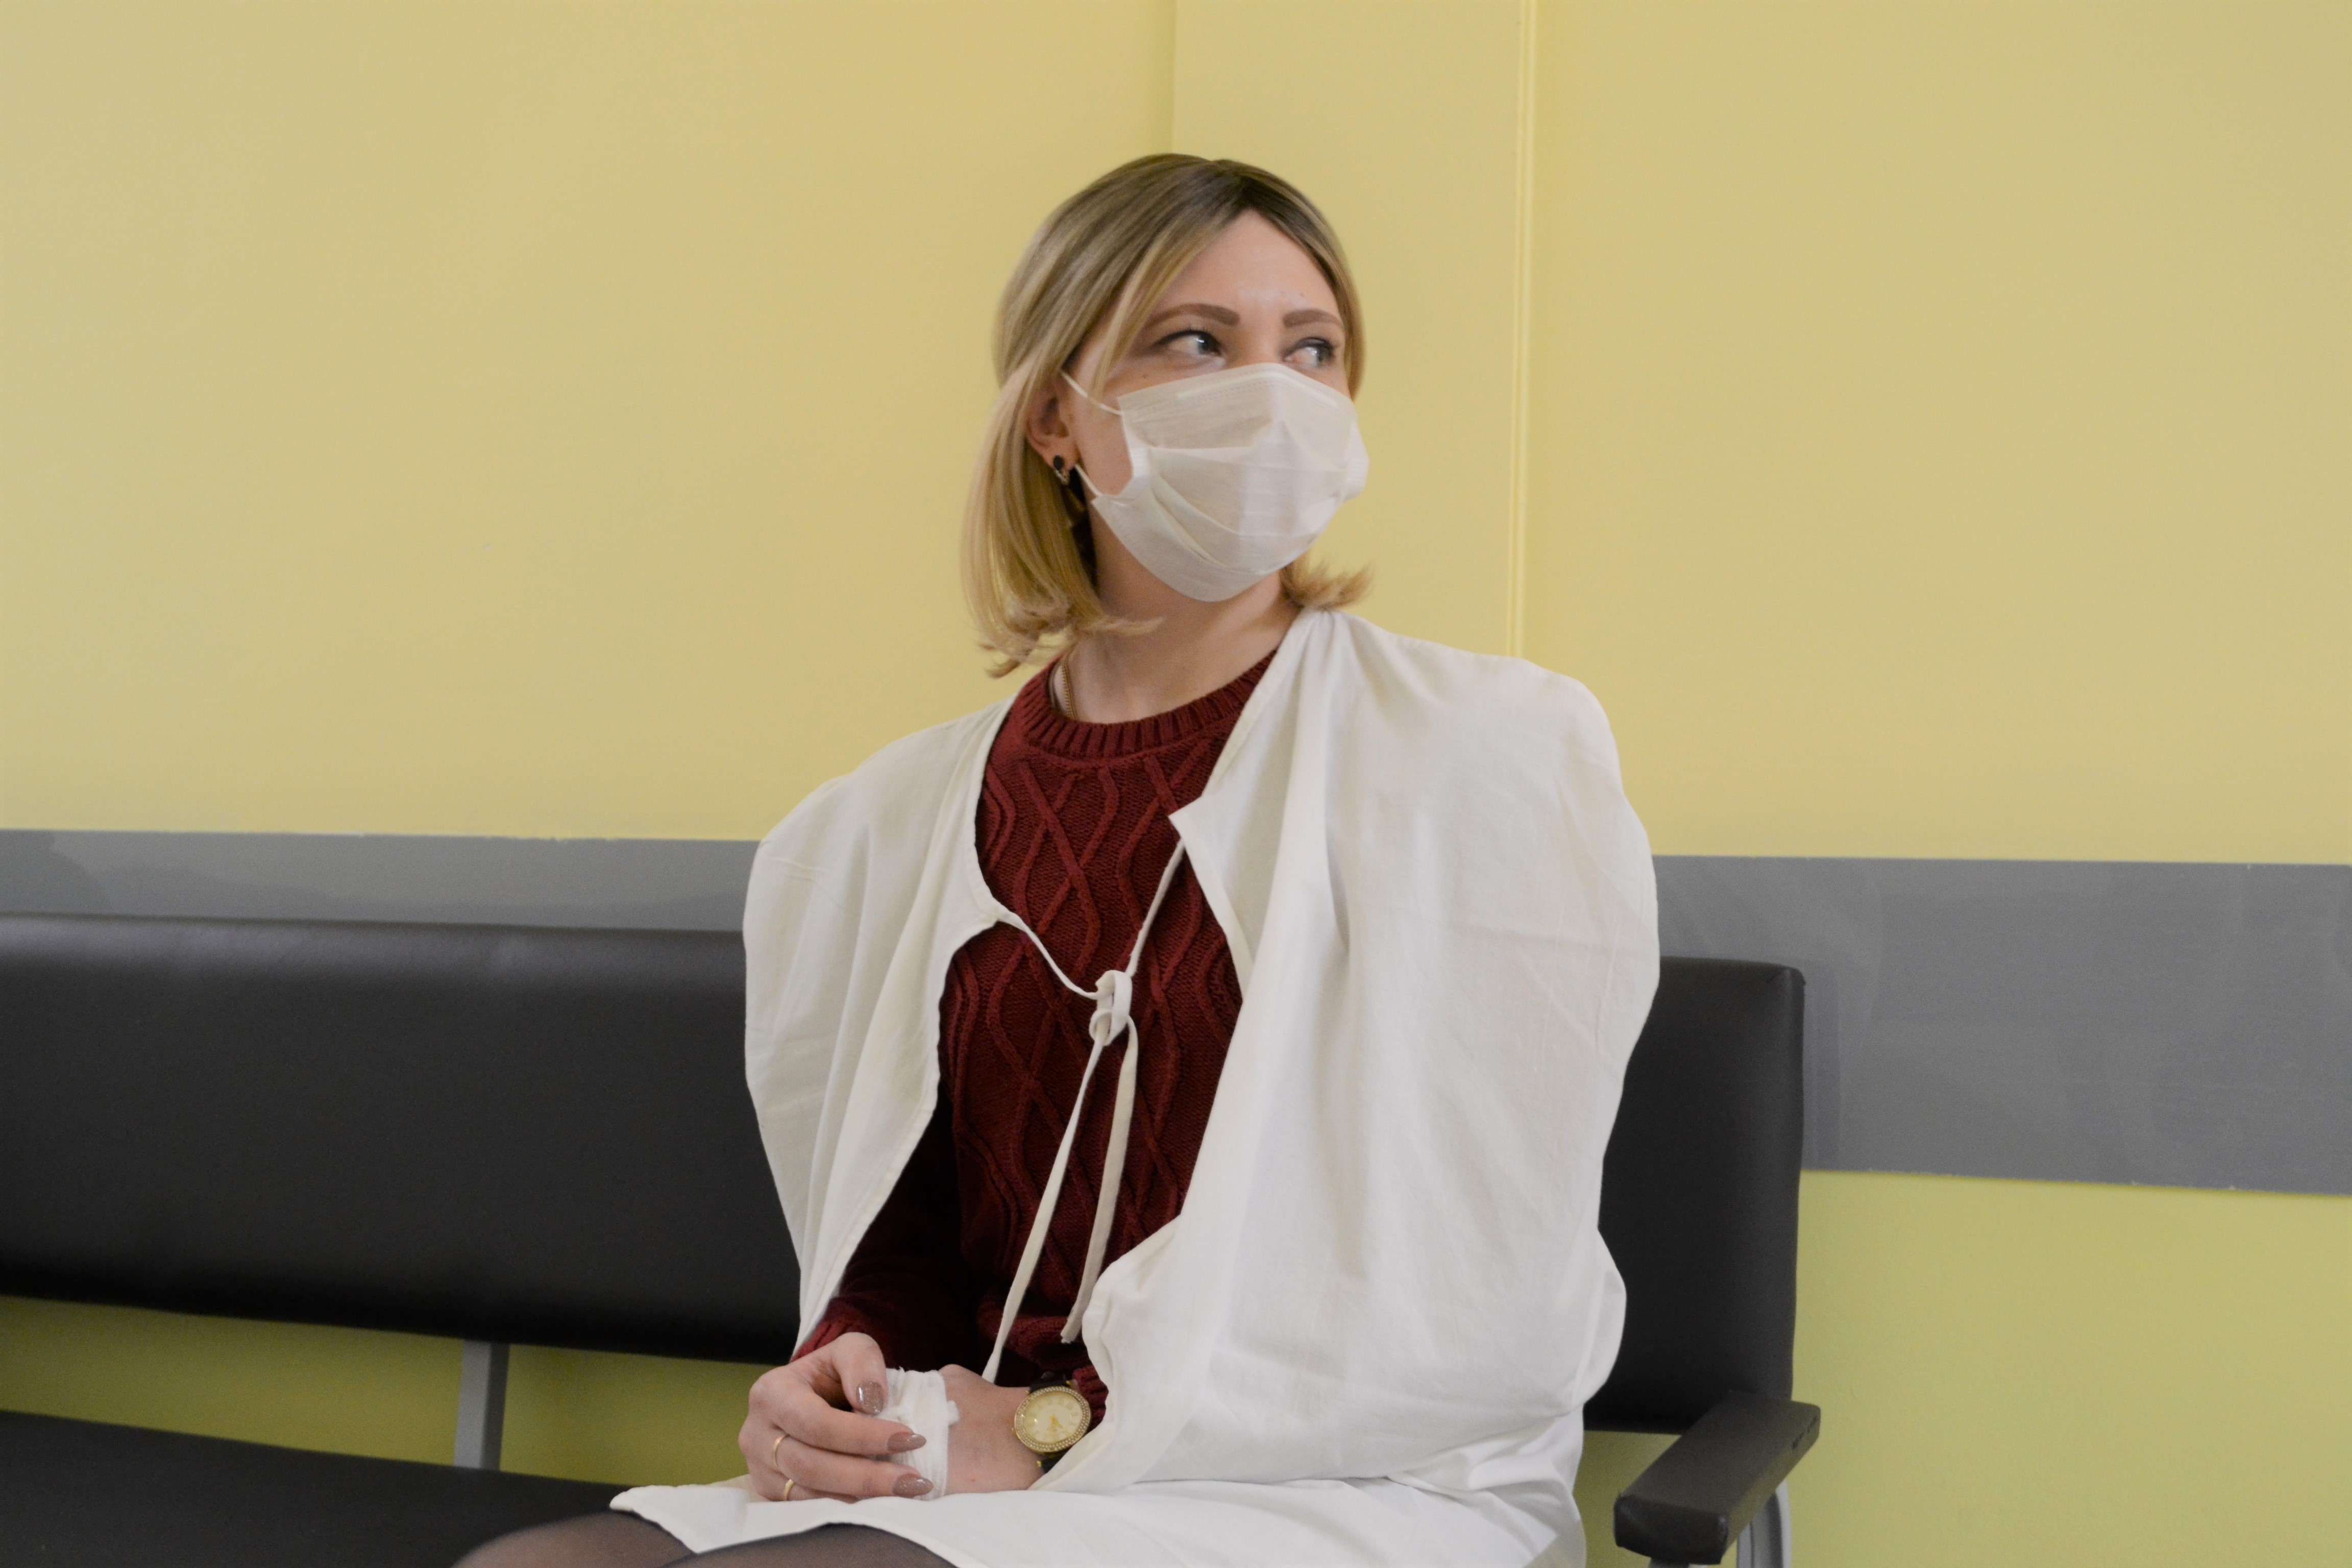 Медицинскую маску Людмила пока не снимает даже для фото - нельзя, пока не полностью восстановился иммунитет